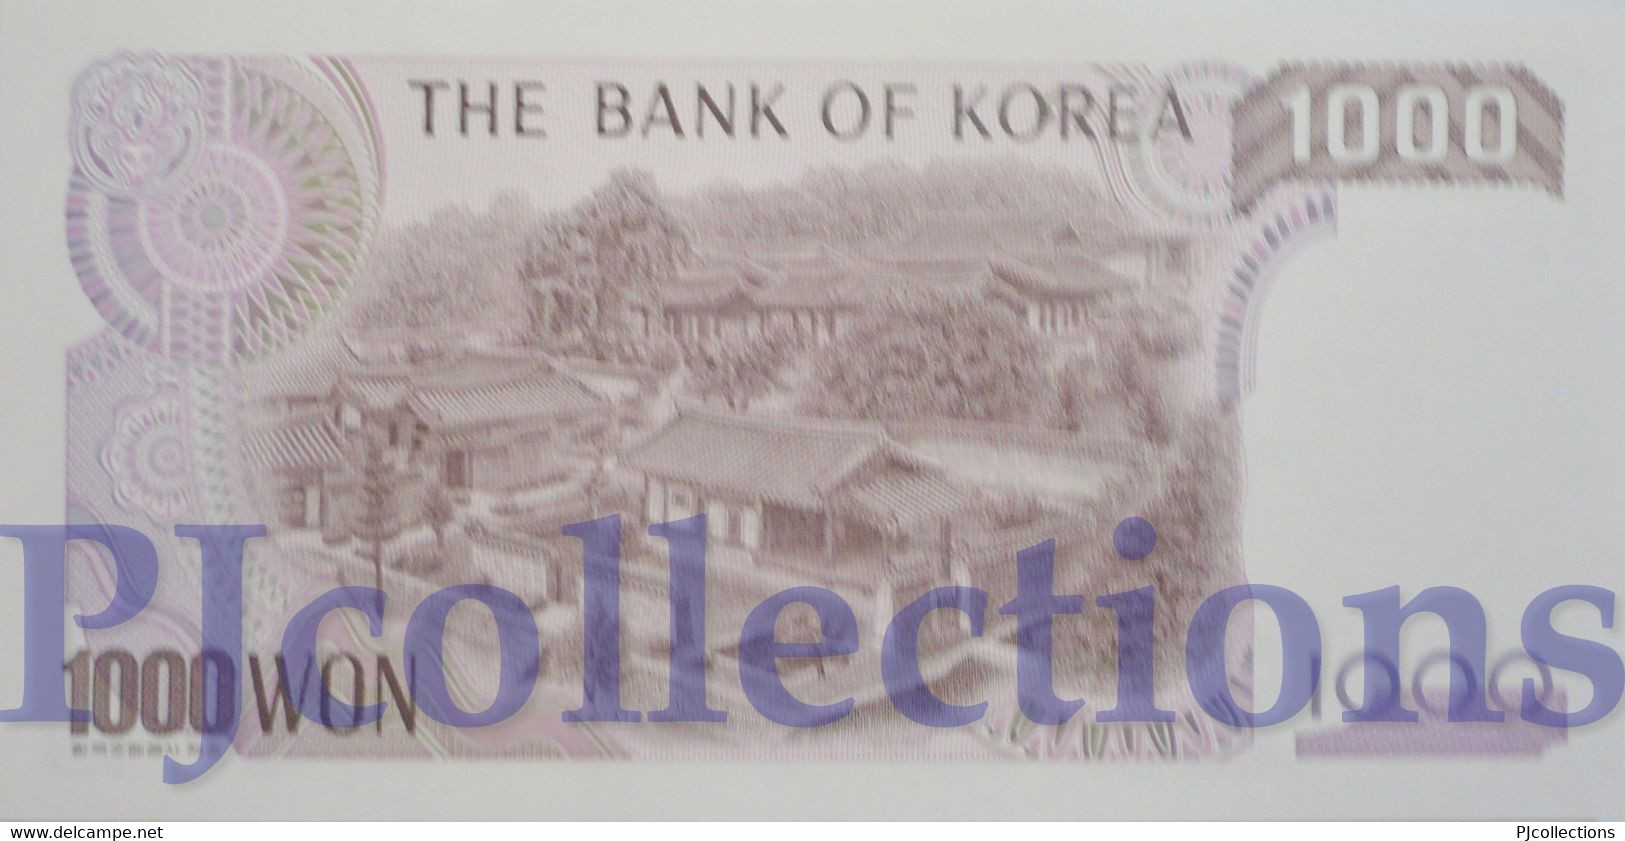 SOUTH KOREA 1000 WON 1983 PICK 47 UNC - Corea Del Sur